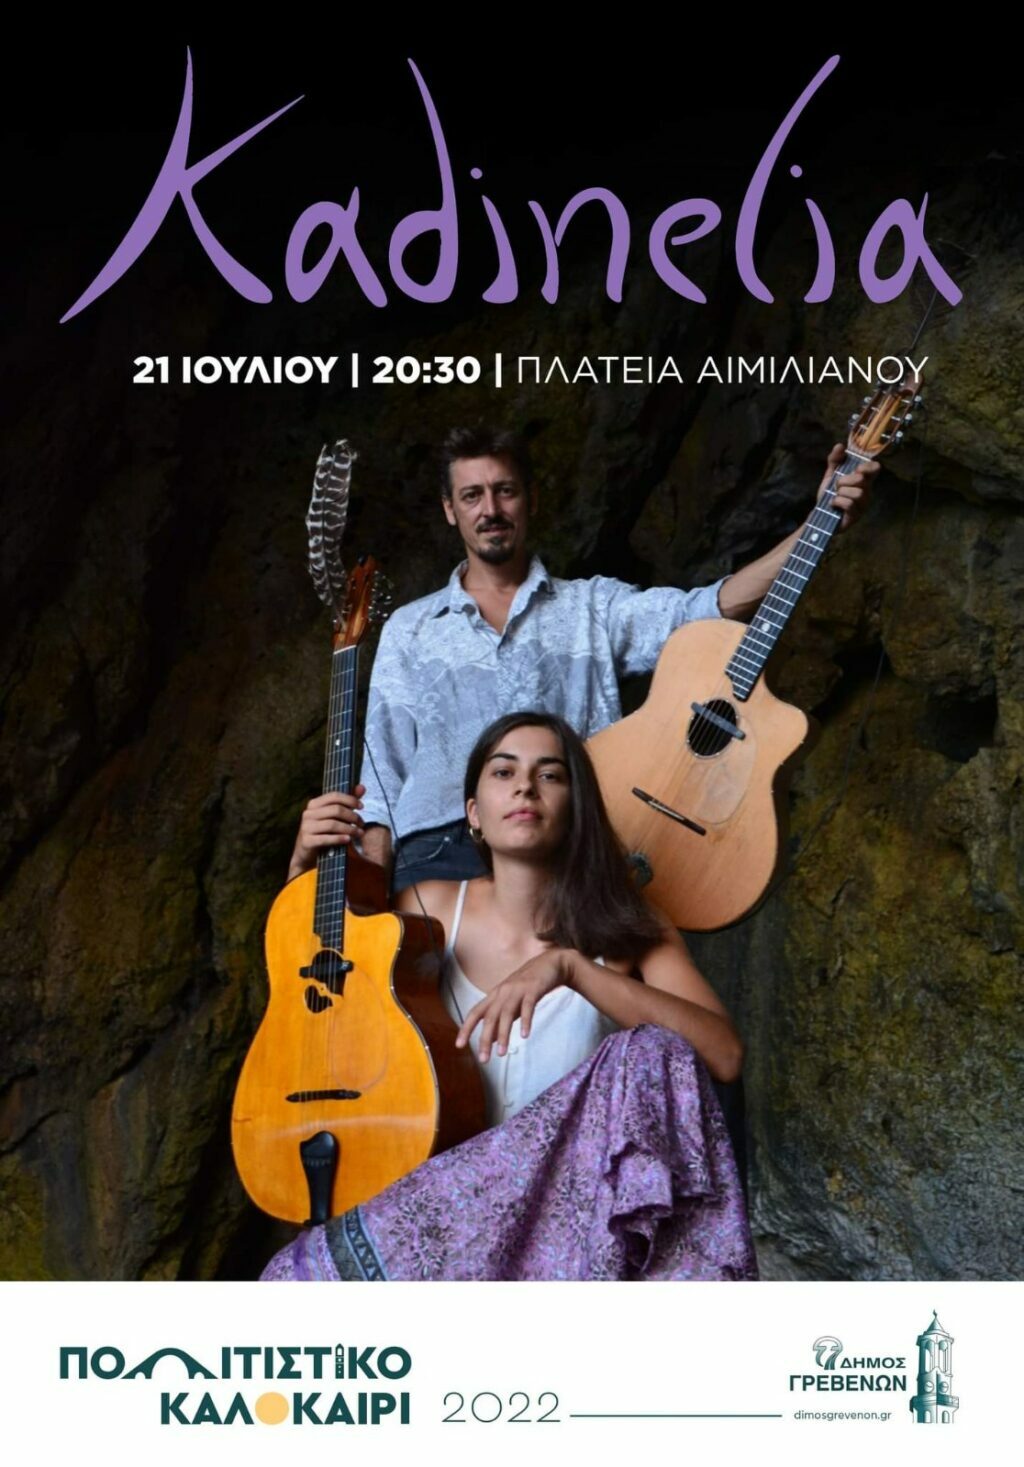 Δήμος Γρεβενών: Απόψε στις 20:30 η συναυλία των Kadinelia στην κεντρική πλατεία Αιμιλιανού – Μία μοναδική καλοκαιρινή μουσική βραδιά με ελεύθερη είσοδο